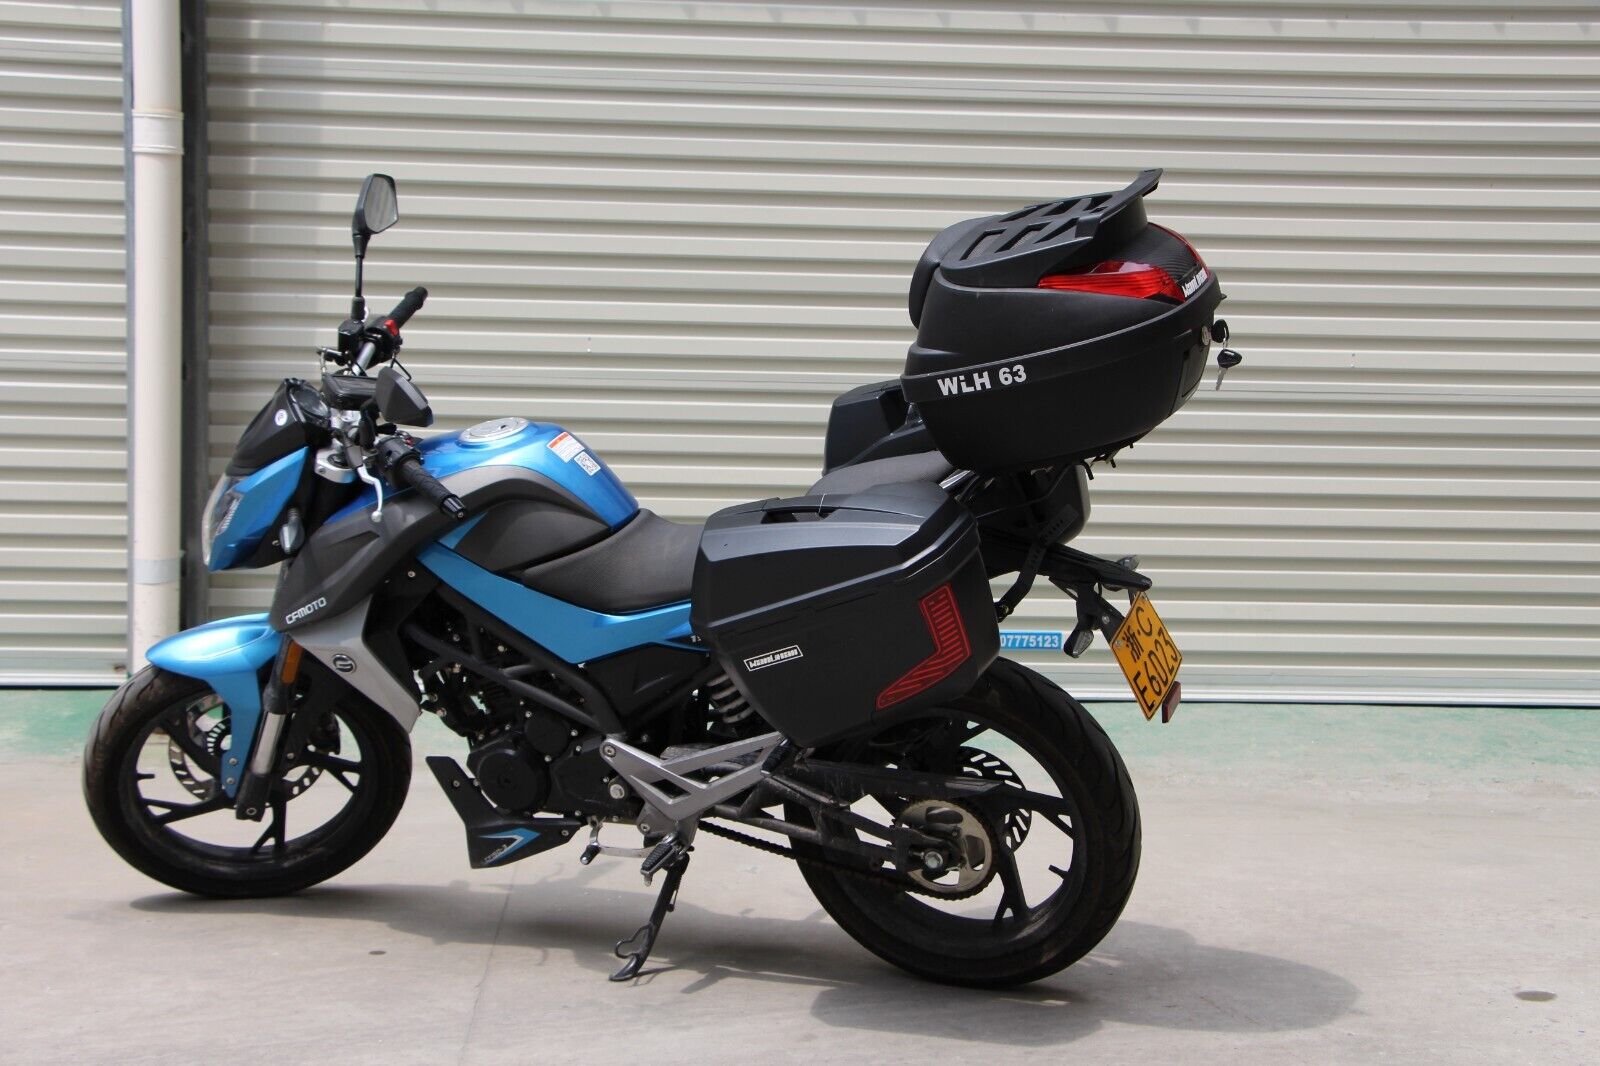 Mutazu Universal V36 Motorcycle Hard Saddlebags Saddle Bags for Cruise ...